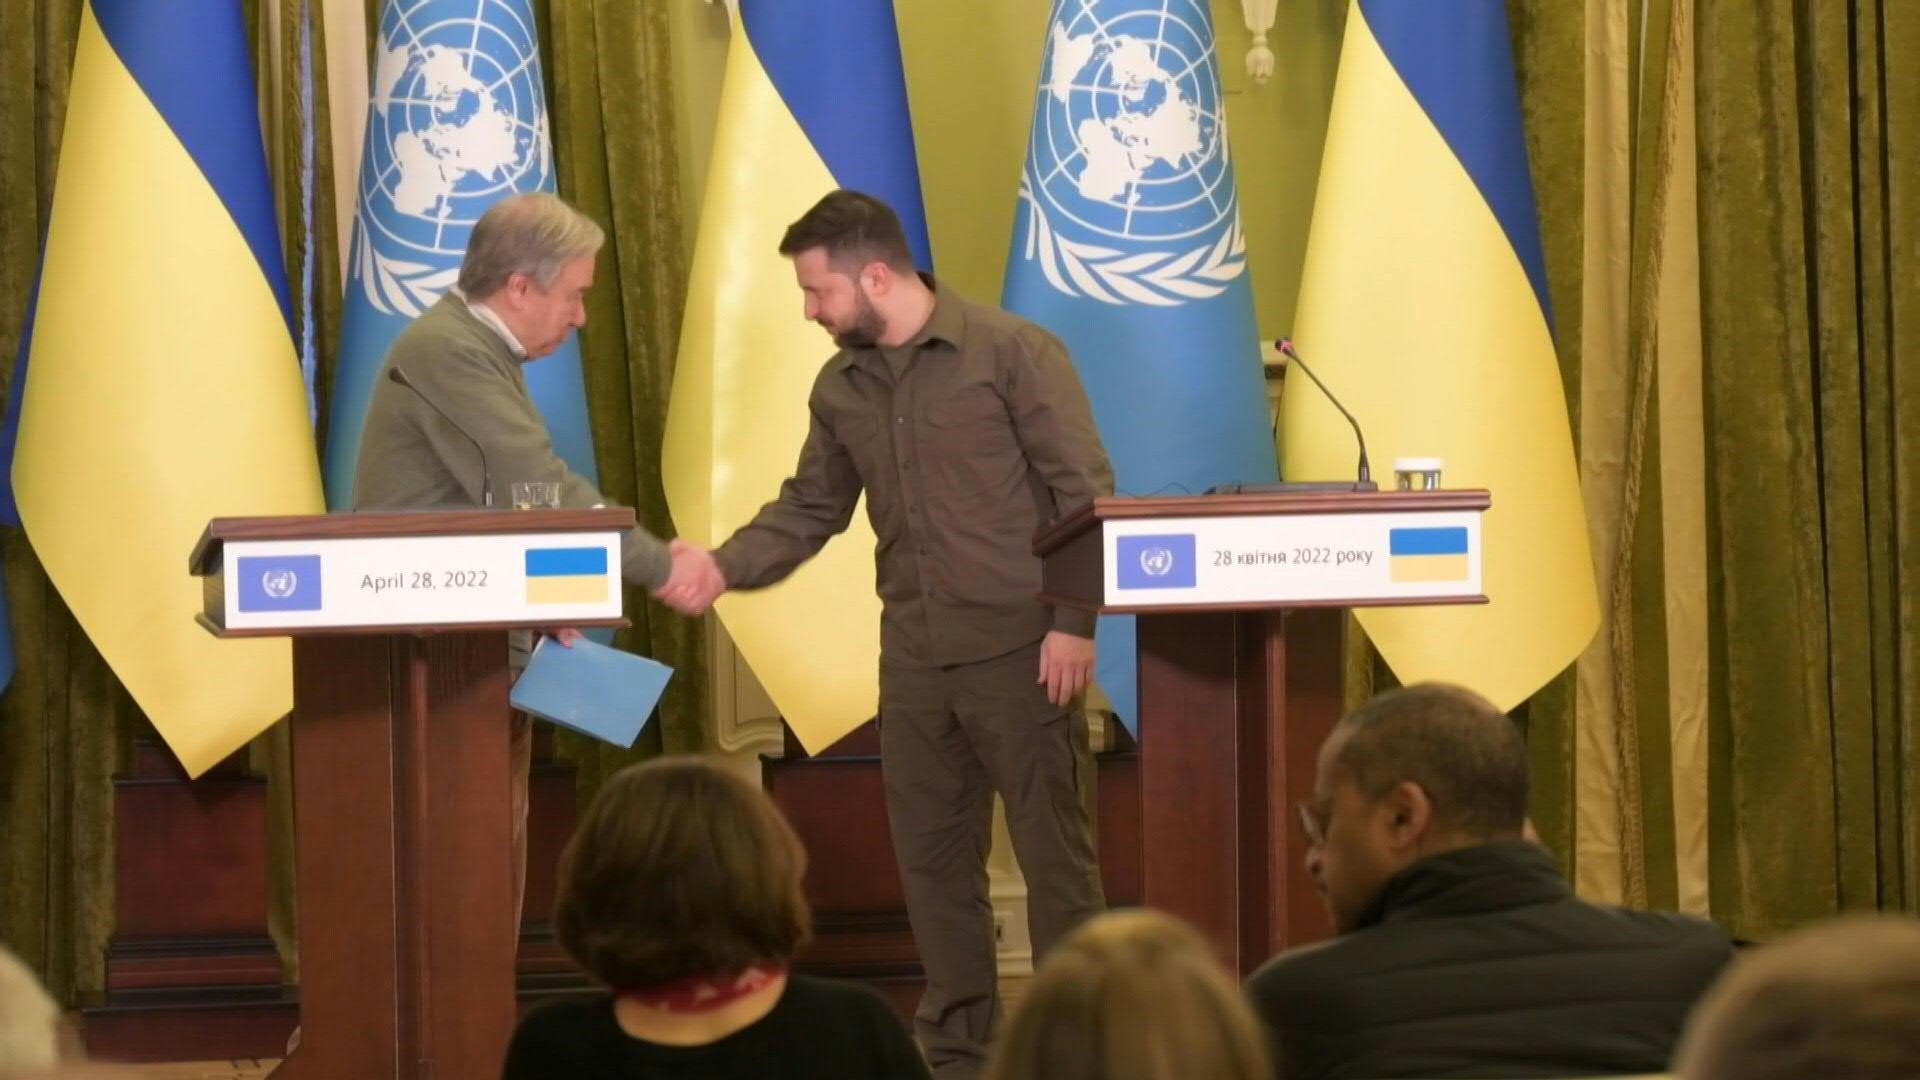 Zelensky y Guterres se saludan en público antes de ofrecer una conferencia de prensa en Kiev, tras una reunión bilateral para acordar la apertura de un corredor humanitario entre Mariupol y Zaporizhzhia